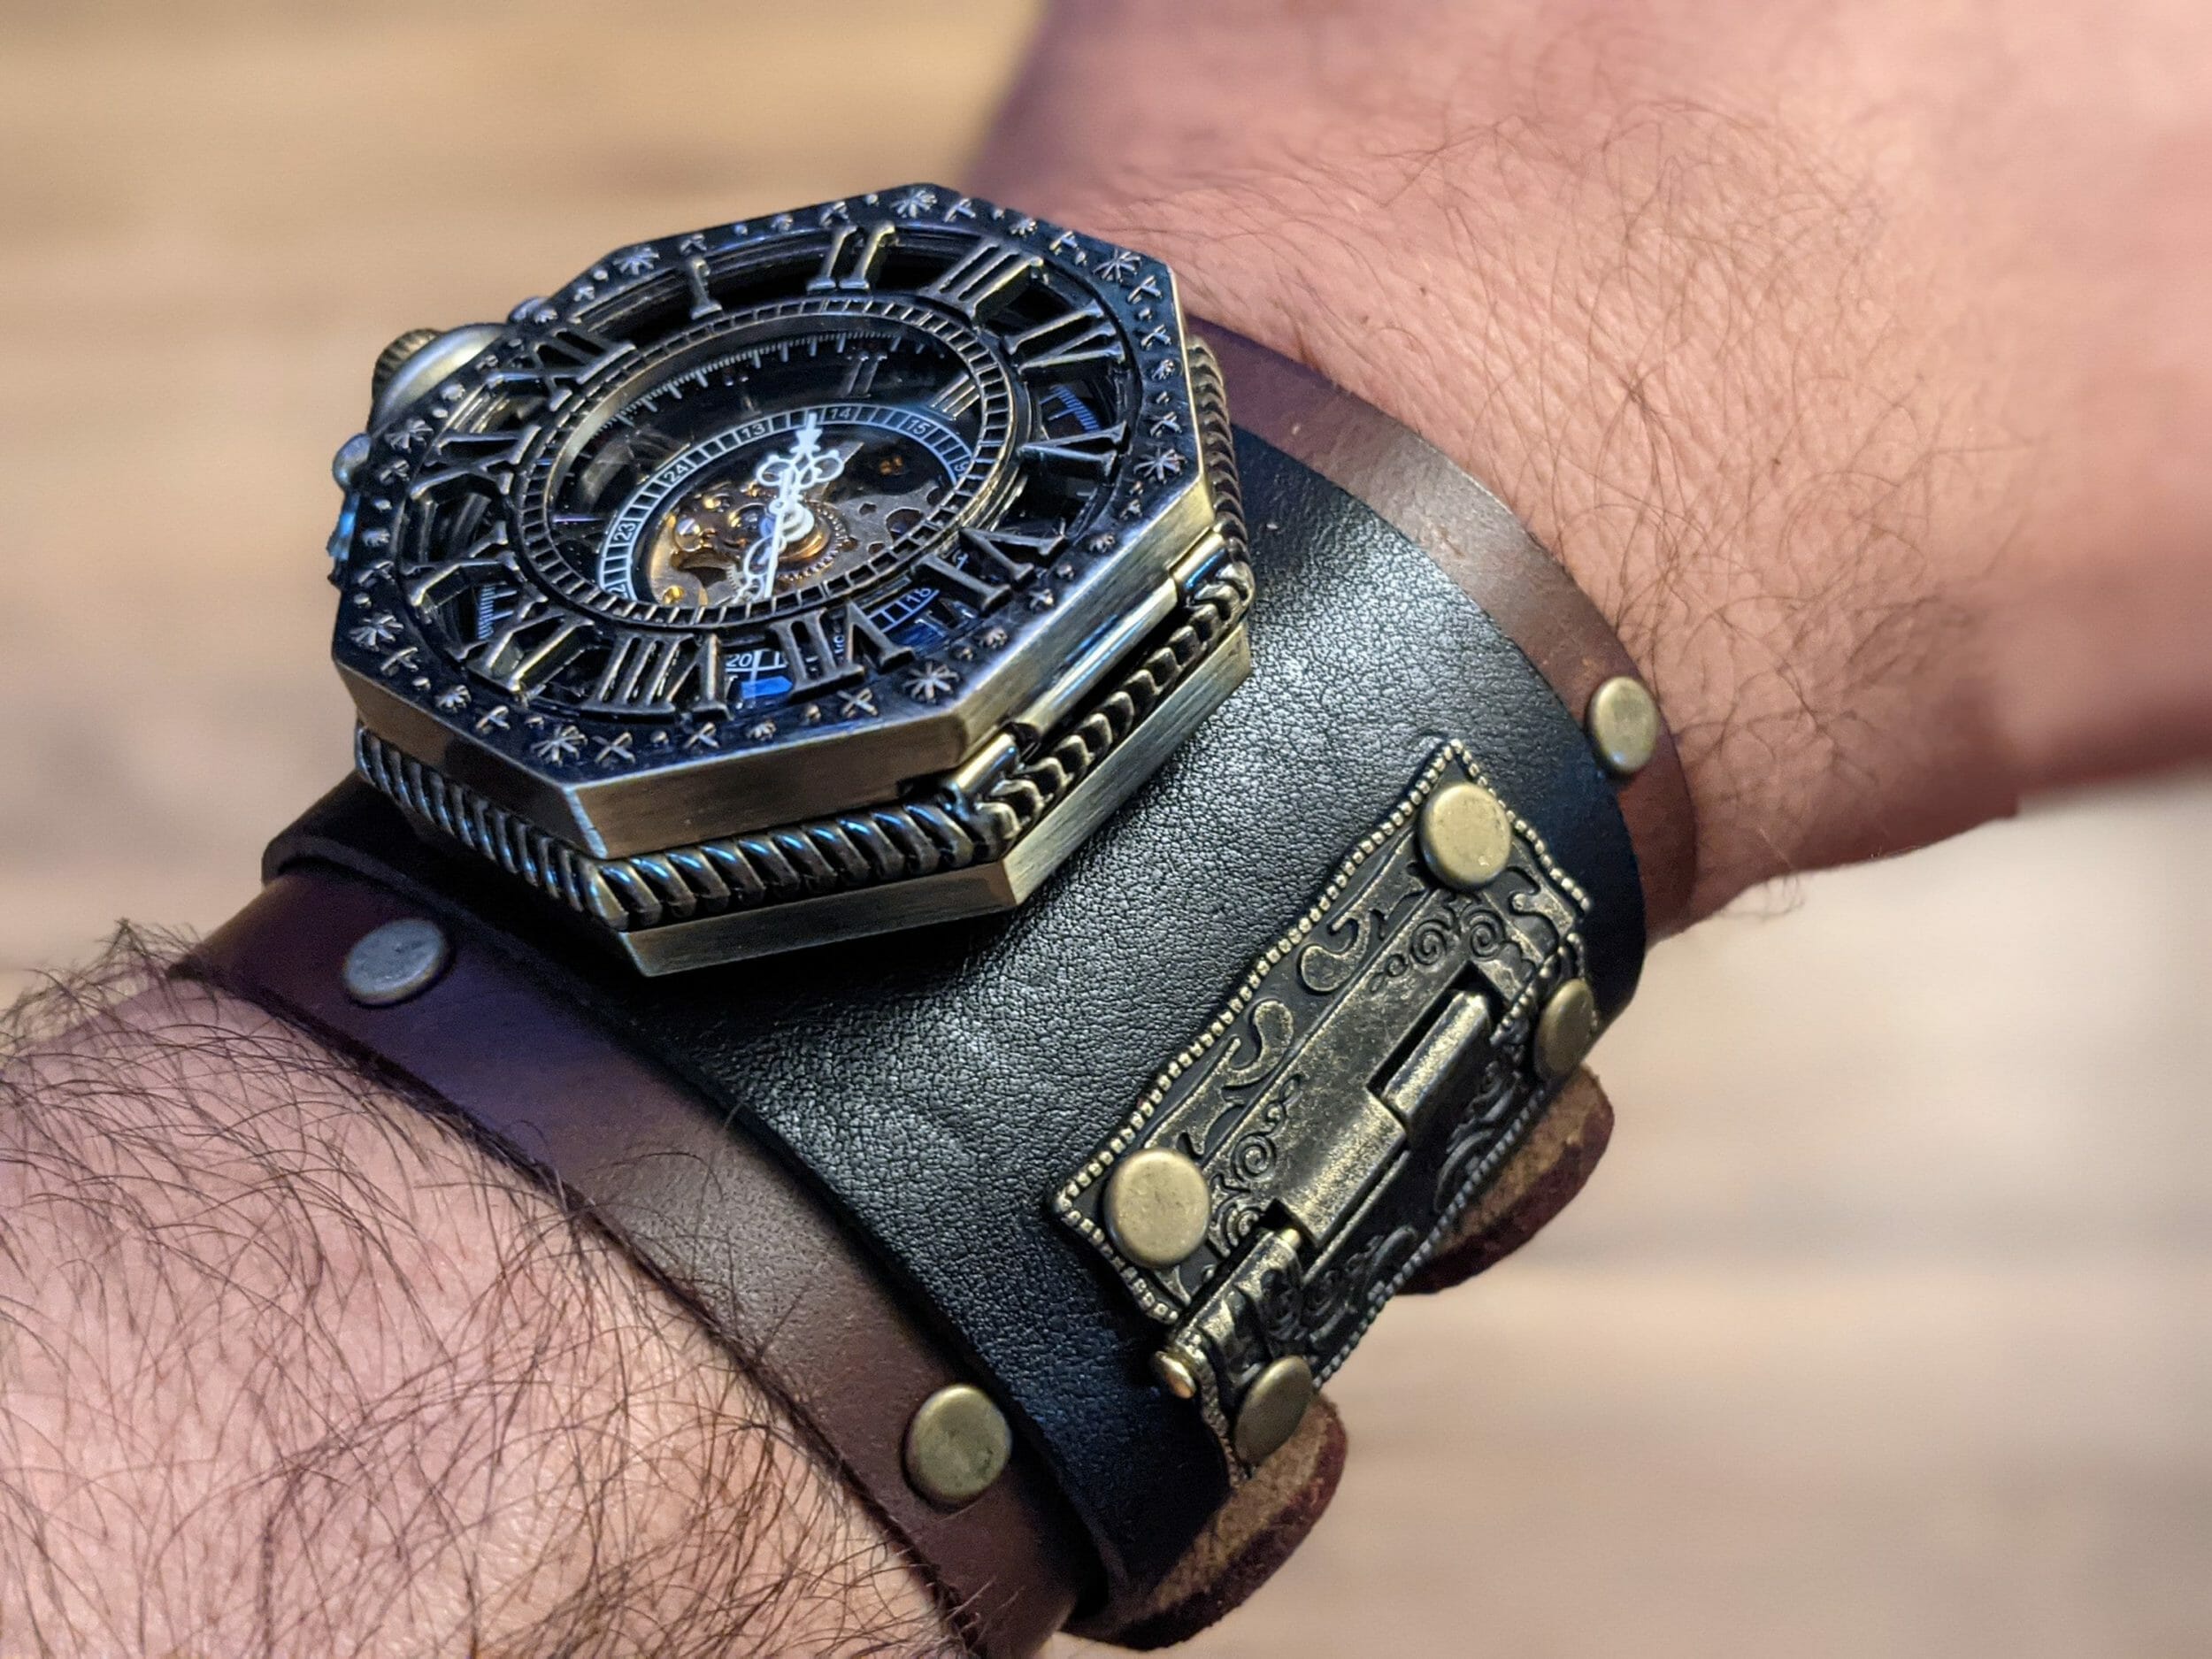 Engineer designs a cyberpunk themed VFD wristwatch - Make: